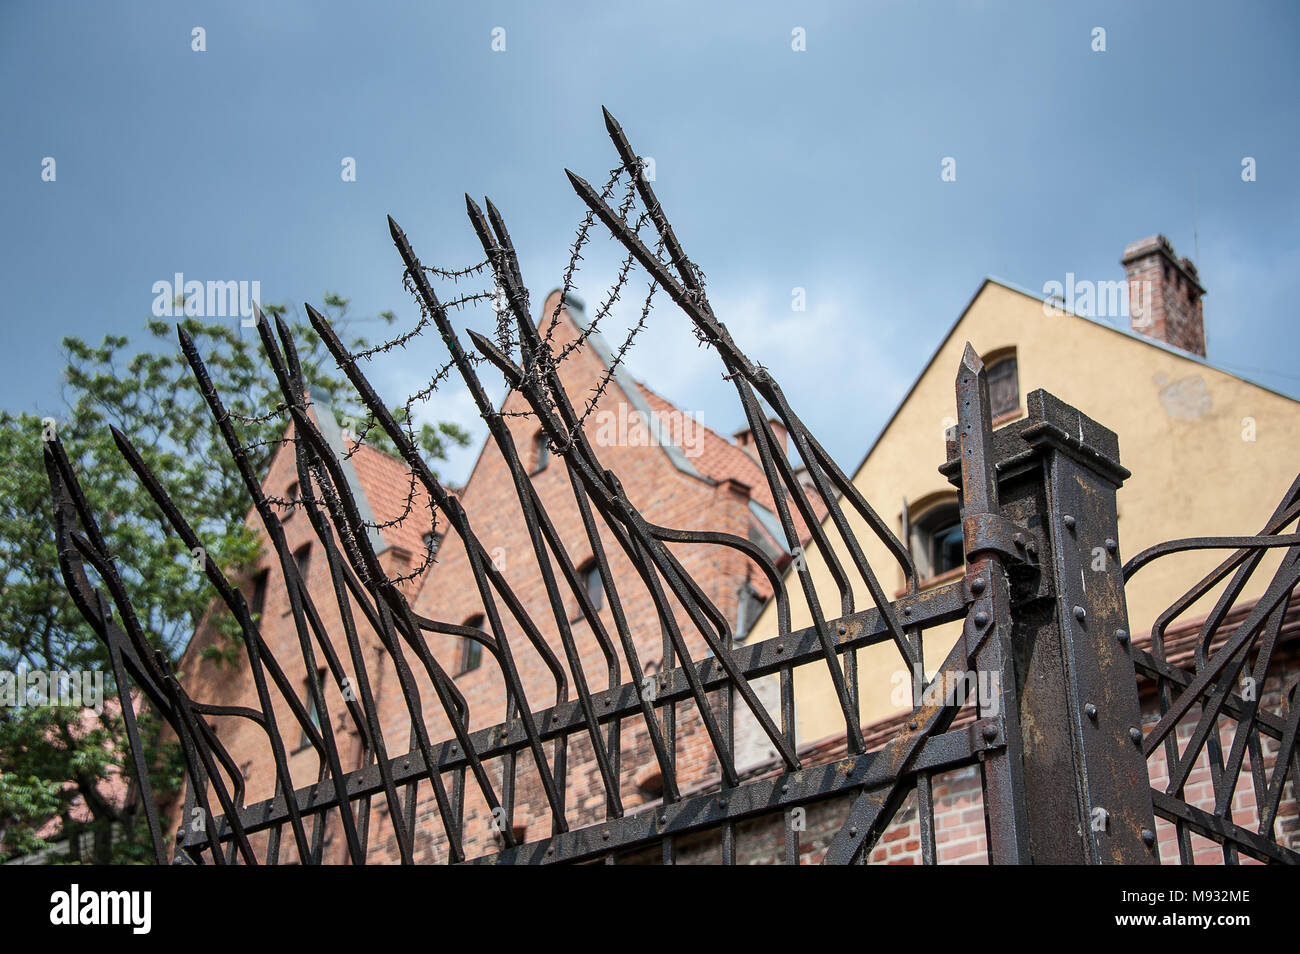 Des mesures de sécurité autour d'un centre de détention à Torun, en Pologne. Une clôture de barbelés, des pics déchiquetés, contre fond de ciel bleu Banque D'Images